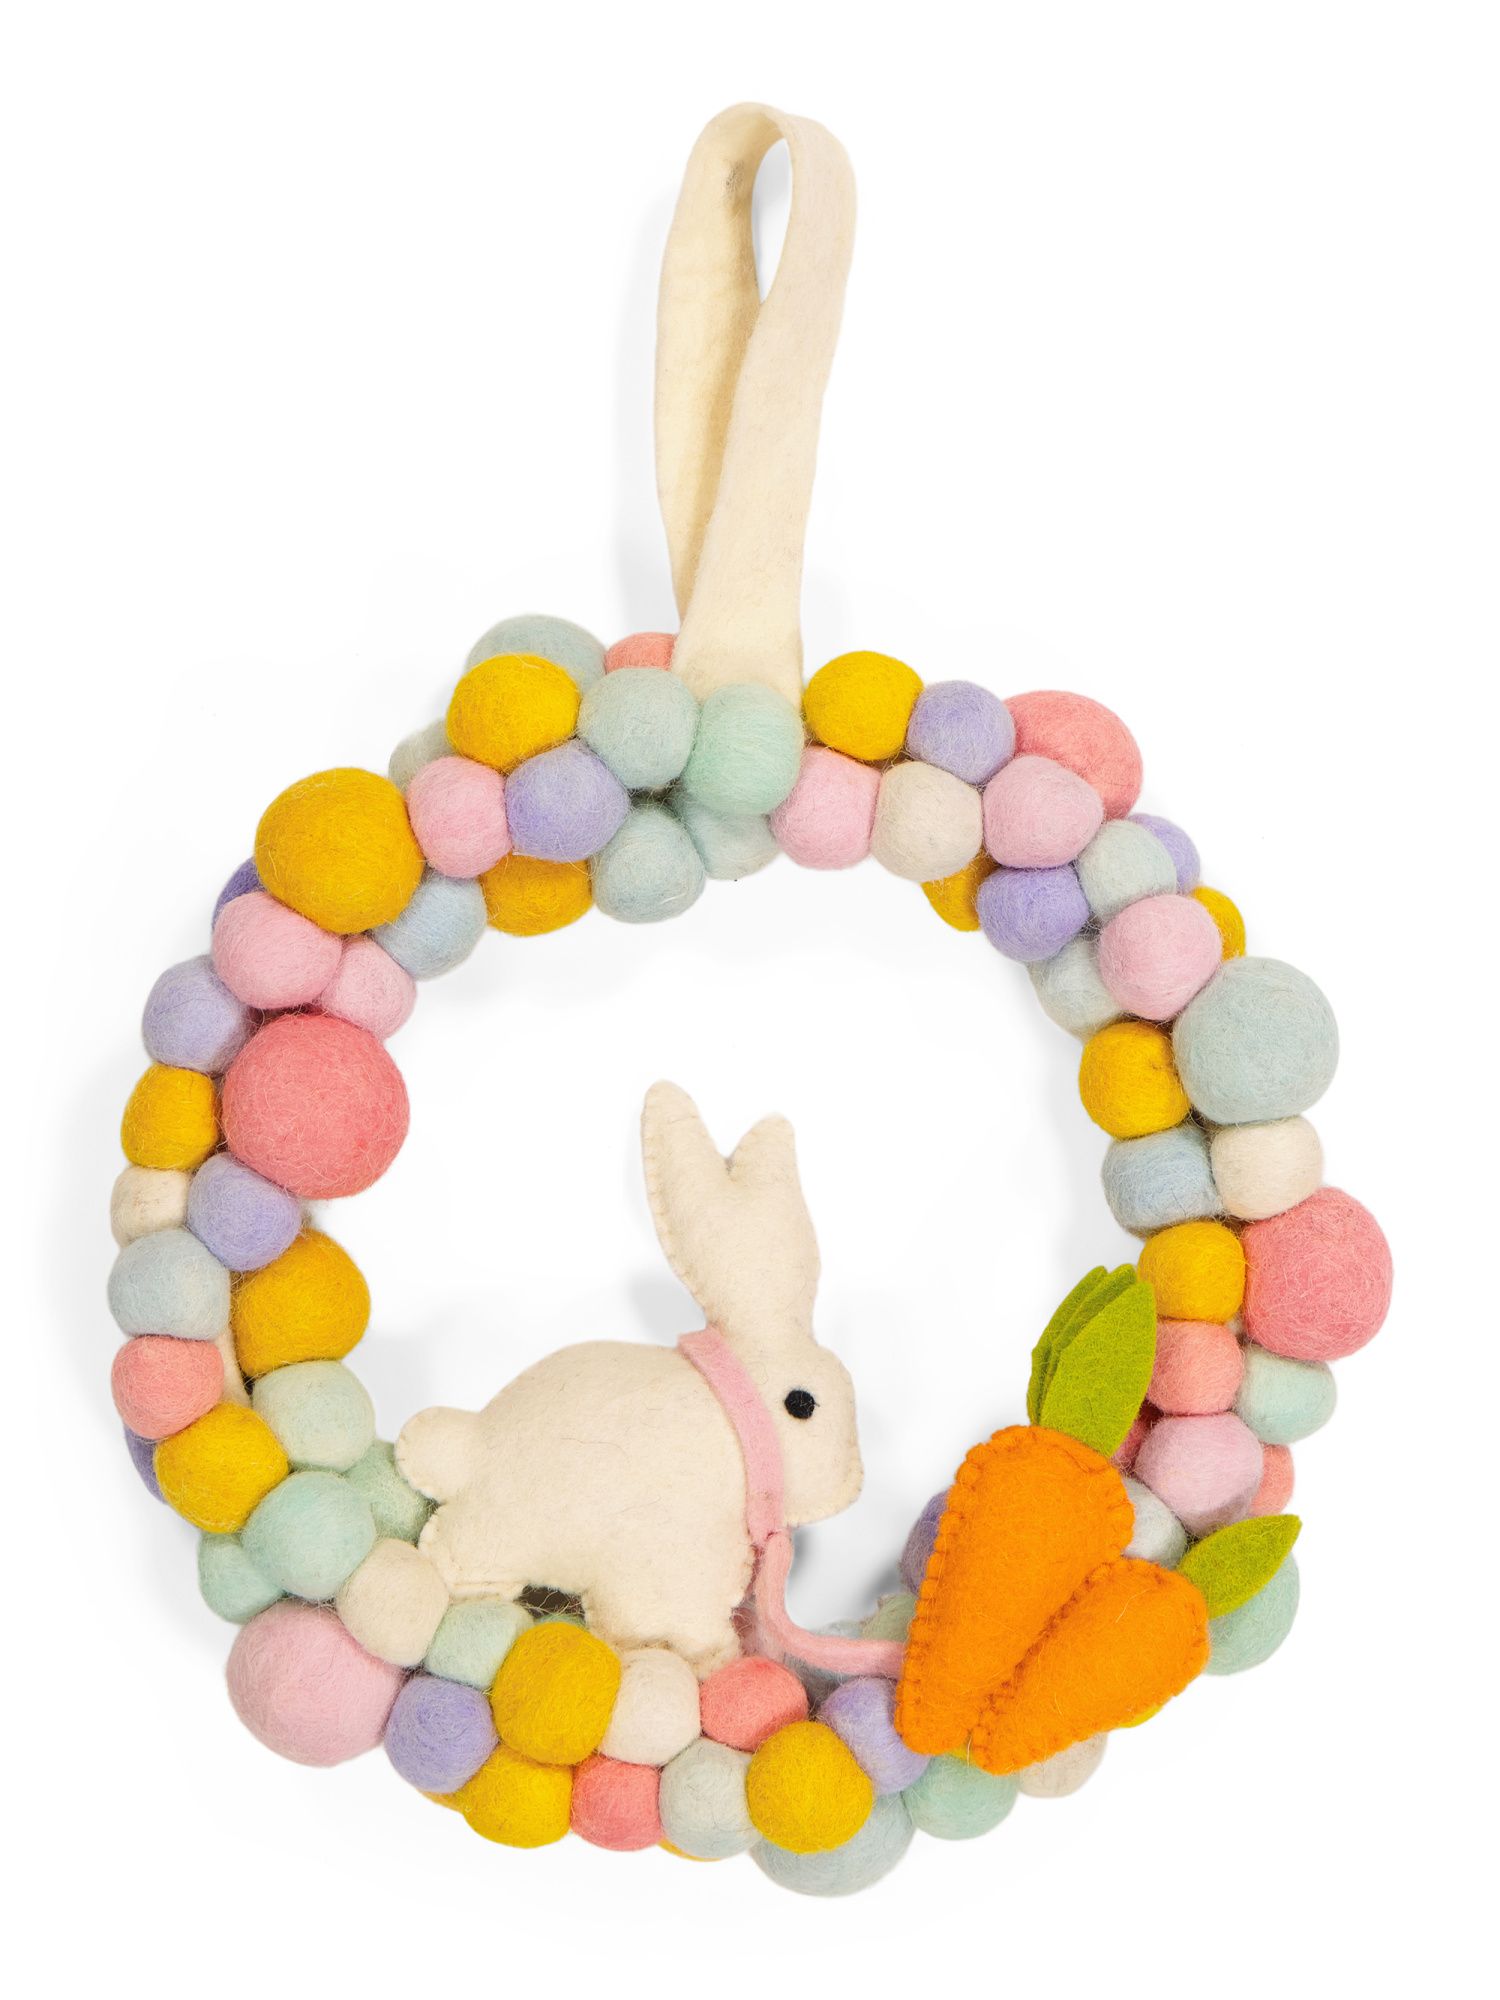 12in Felt Pom Pom Wreath With Rabbit | TJ Maxx